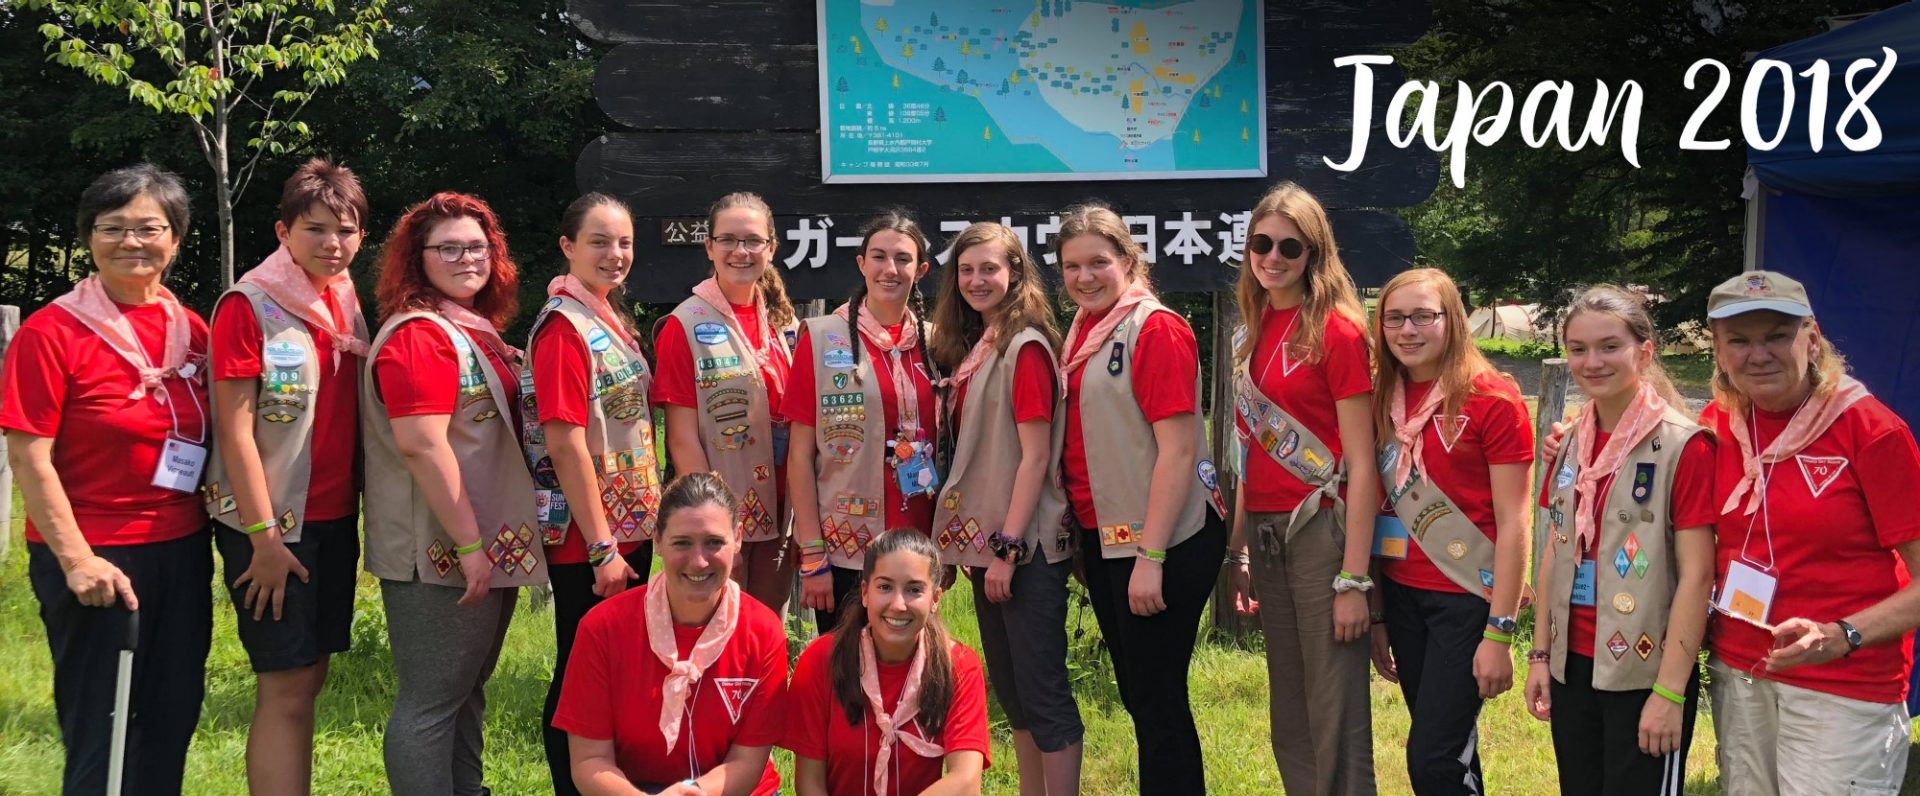 Girl Scouts Japan 2018 trip